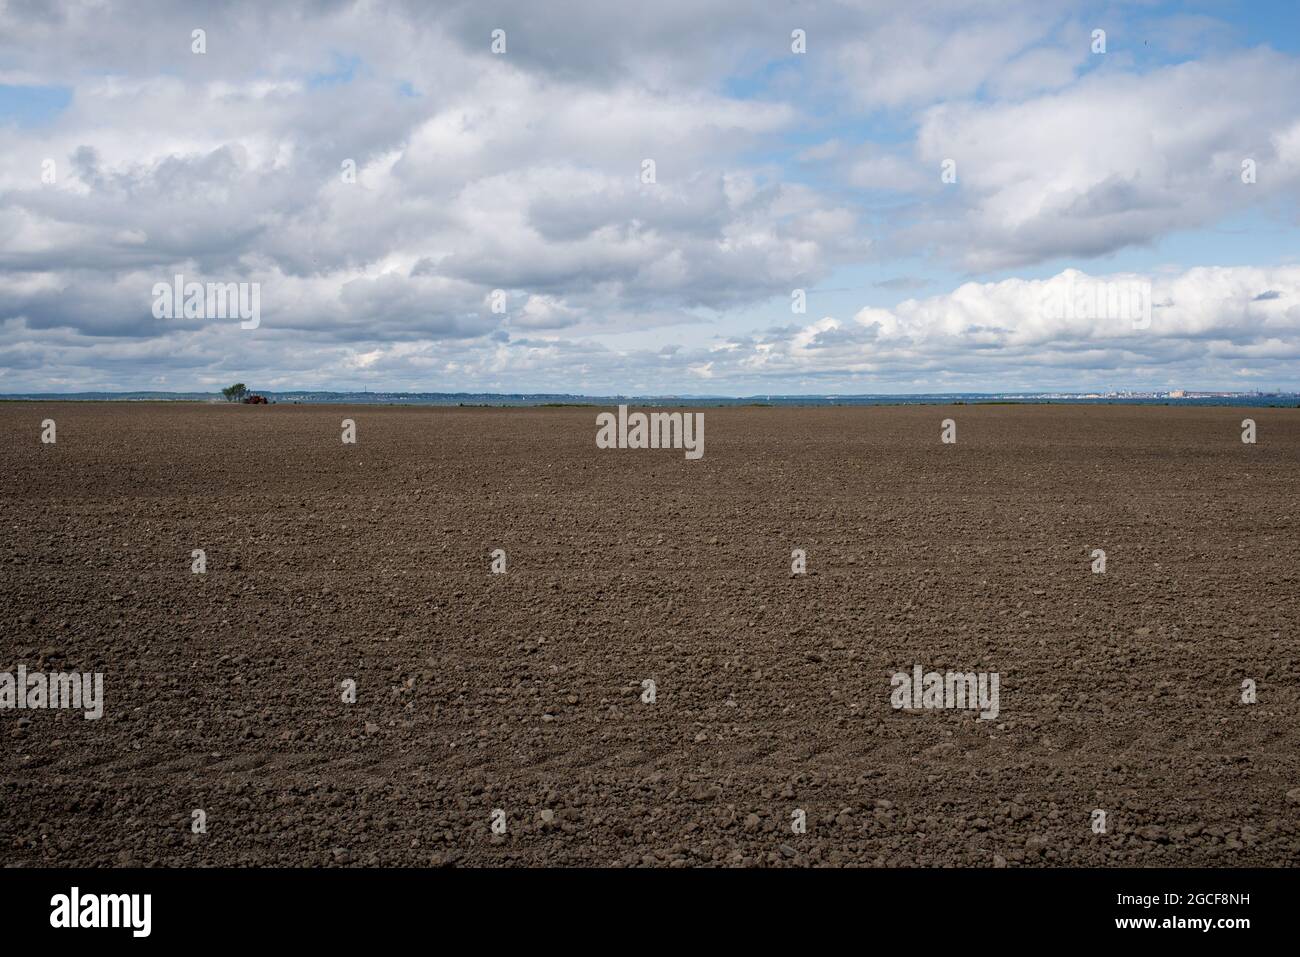 Tierras agrícolas en la isla Ven en Suecia con suelo fresco y tractor en el horizonte Foto de stock